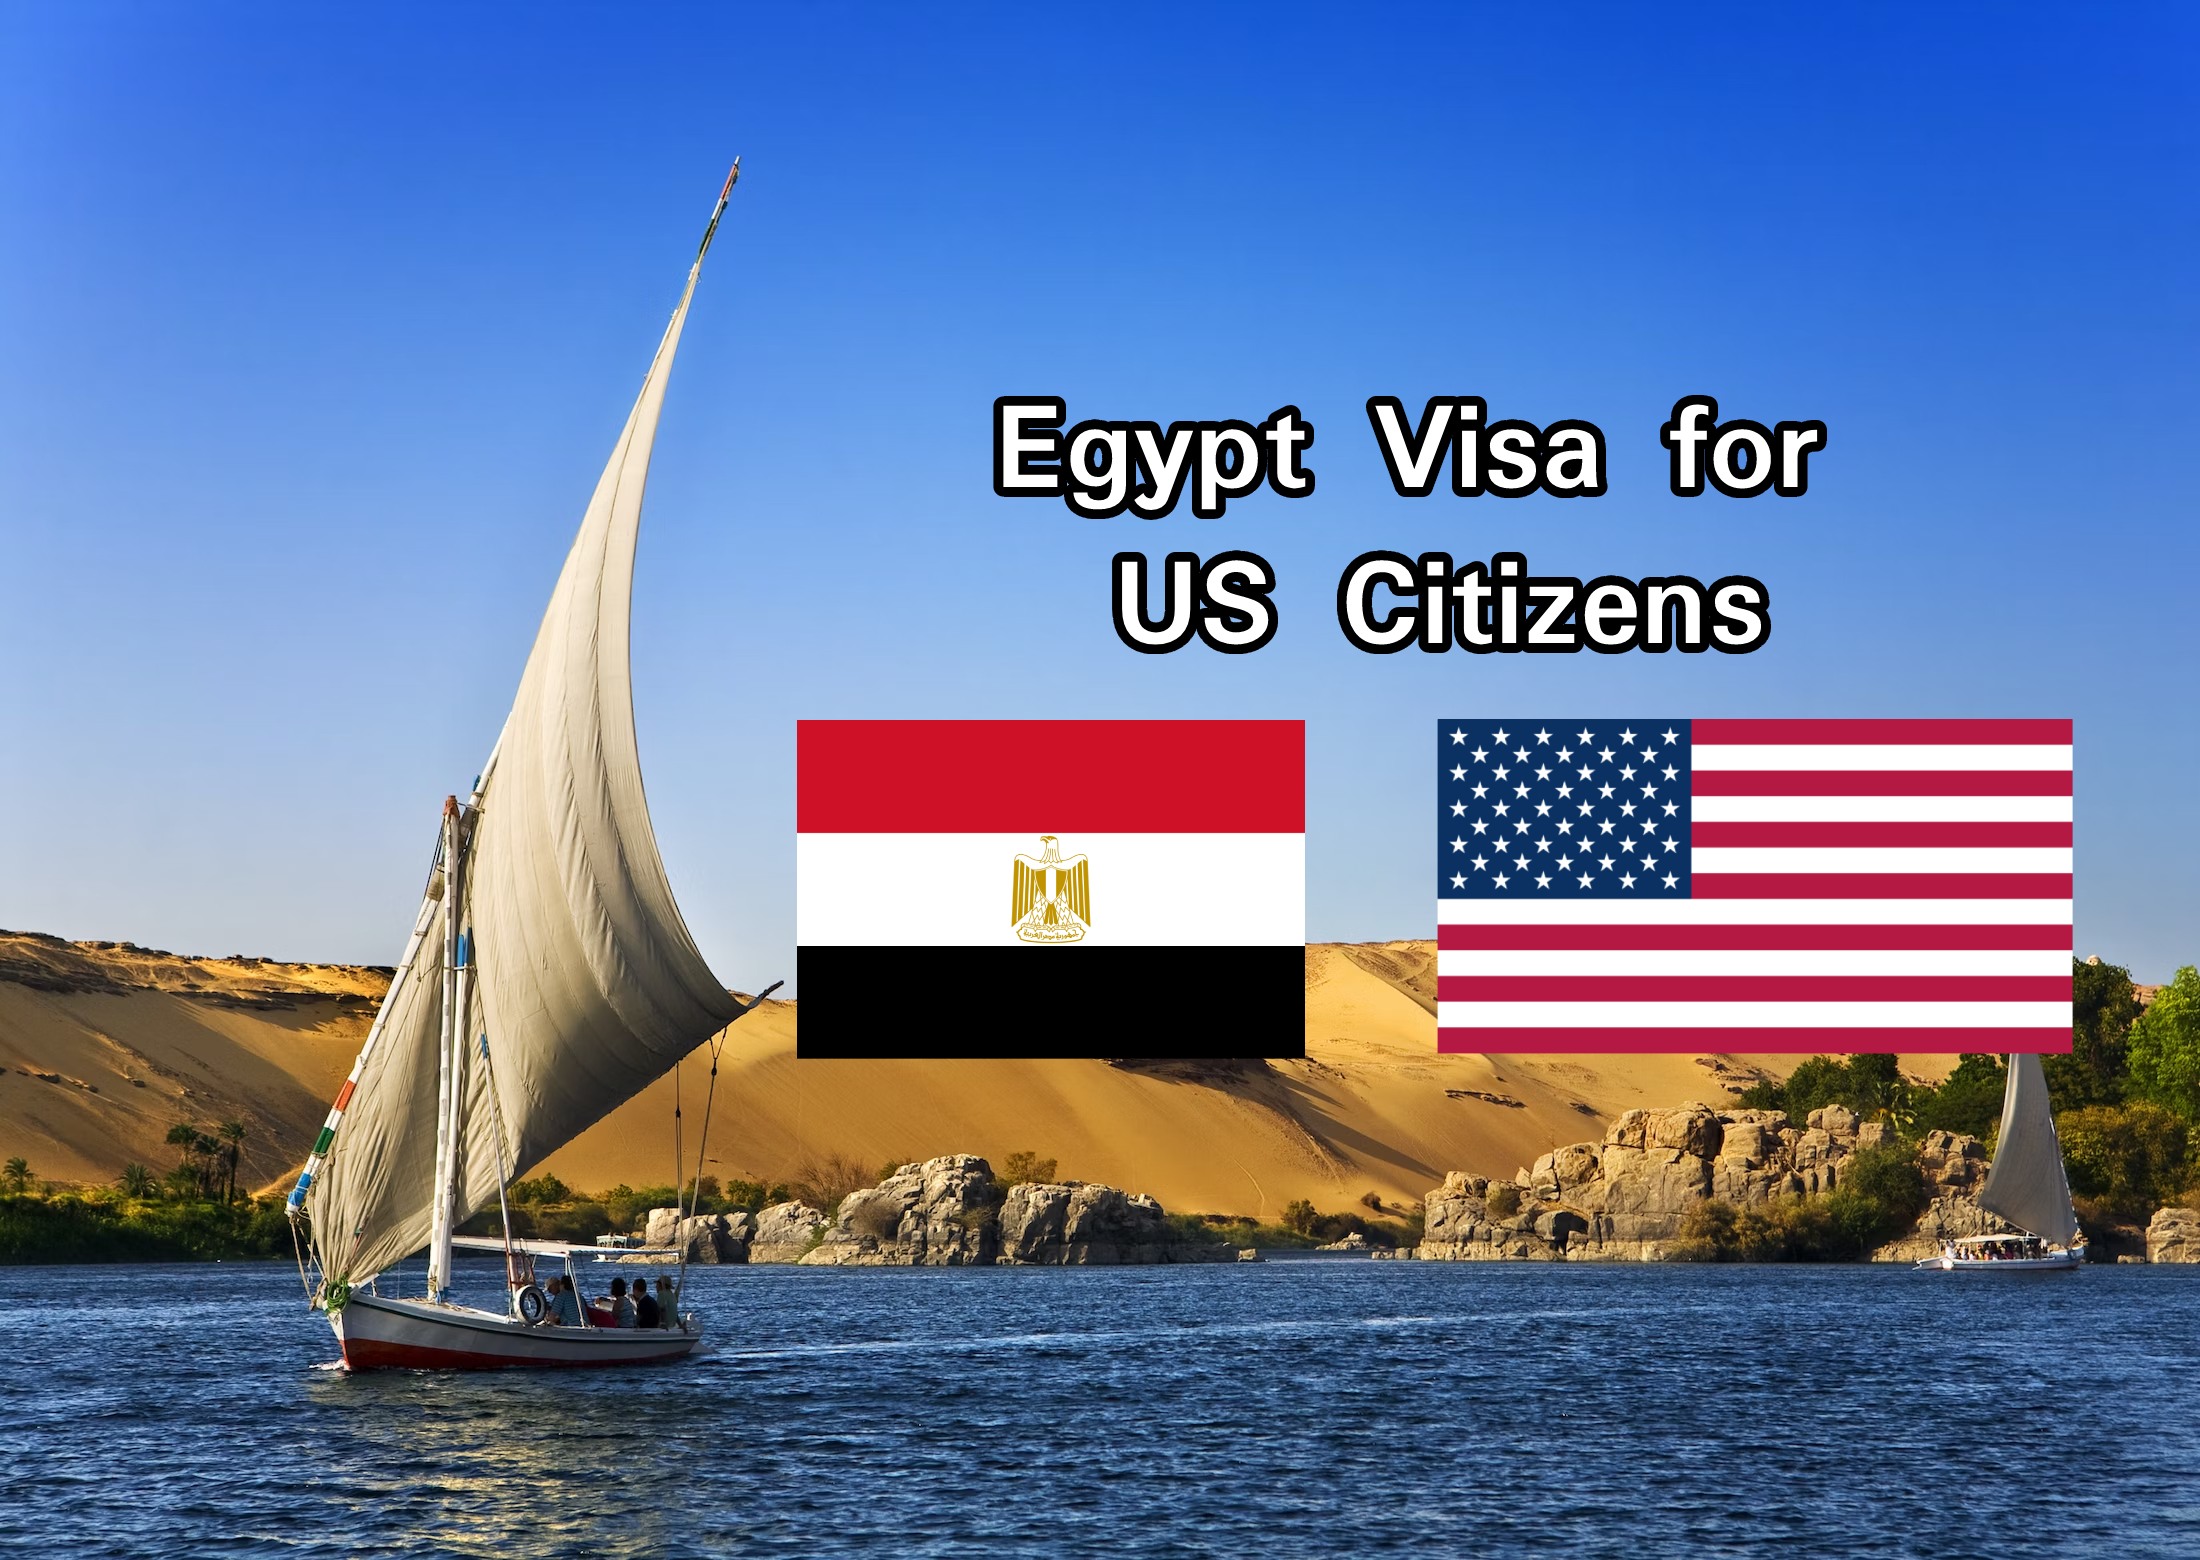 Egypt visa for US Citizens